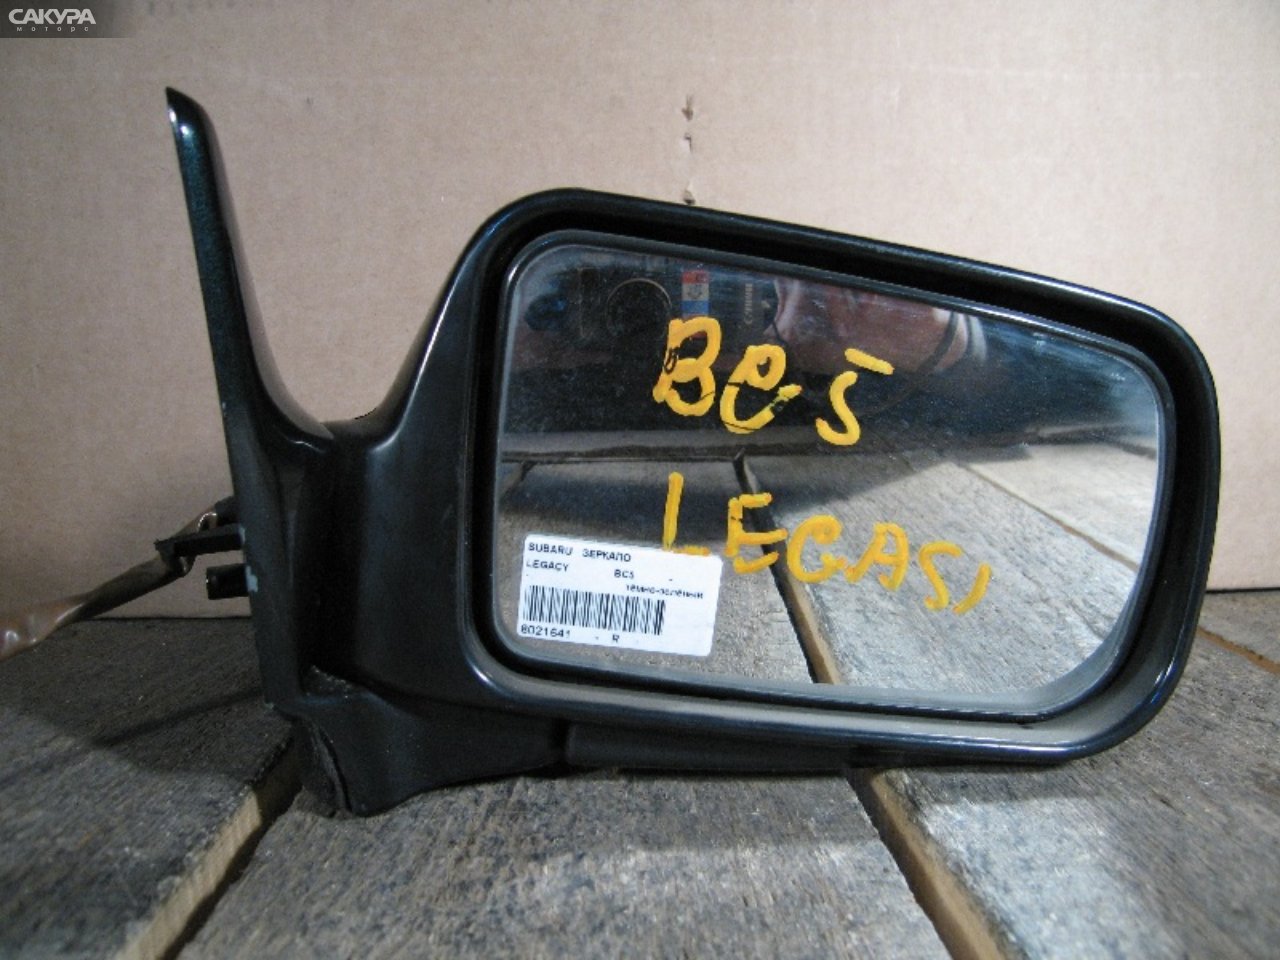 Зеркало боковое правое Subaru Legacy BC5: купить в Сакура Абакан.